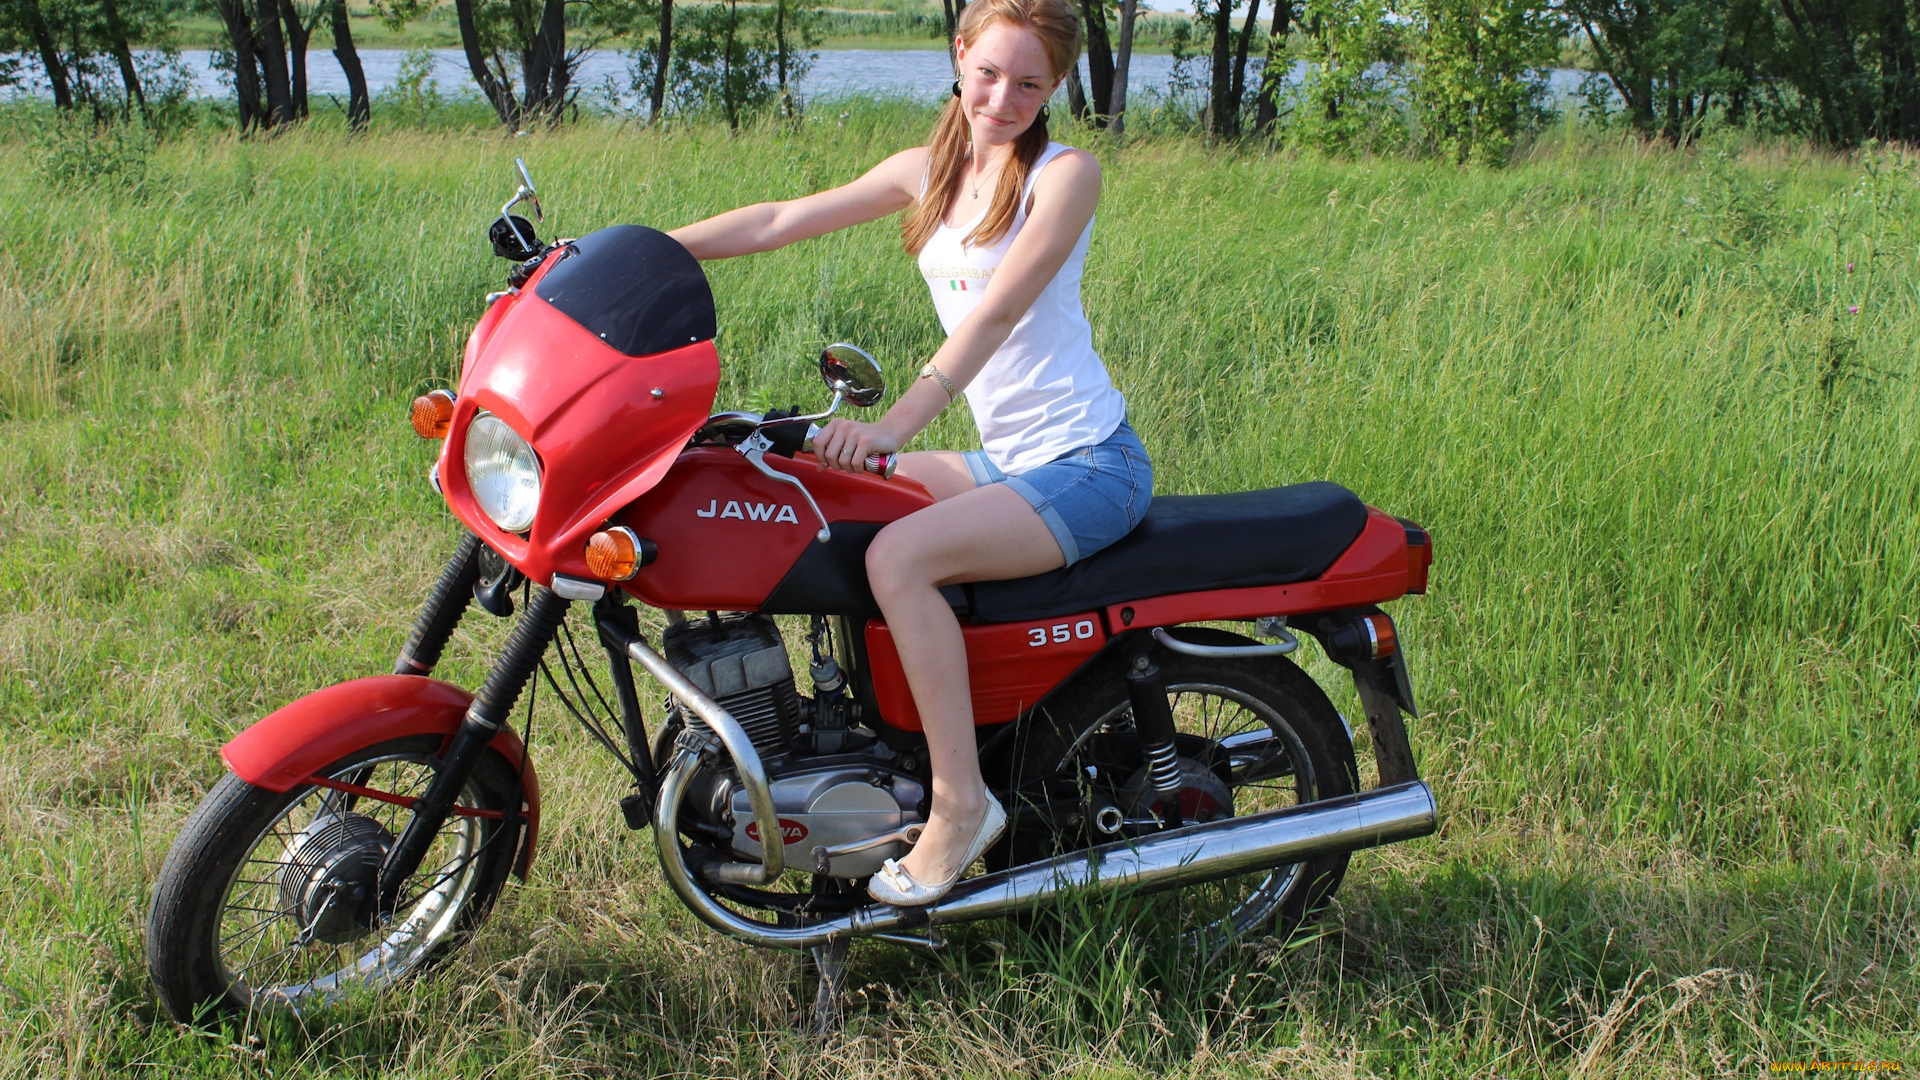 jawa-, 350, мотоциклы, мото, с, девушкой, jawa-, 350, мотоцикл, красный, трава